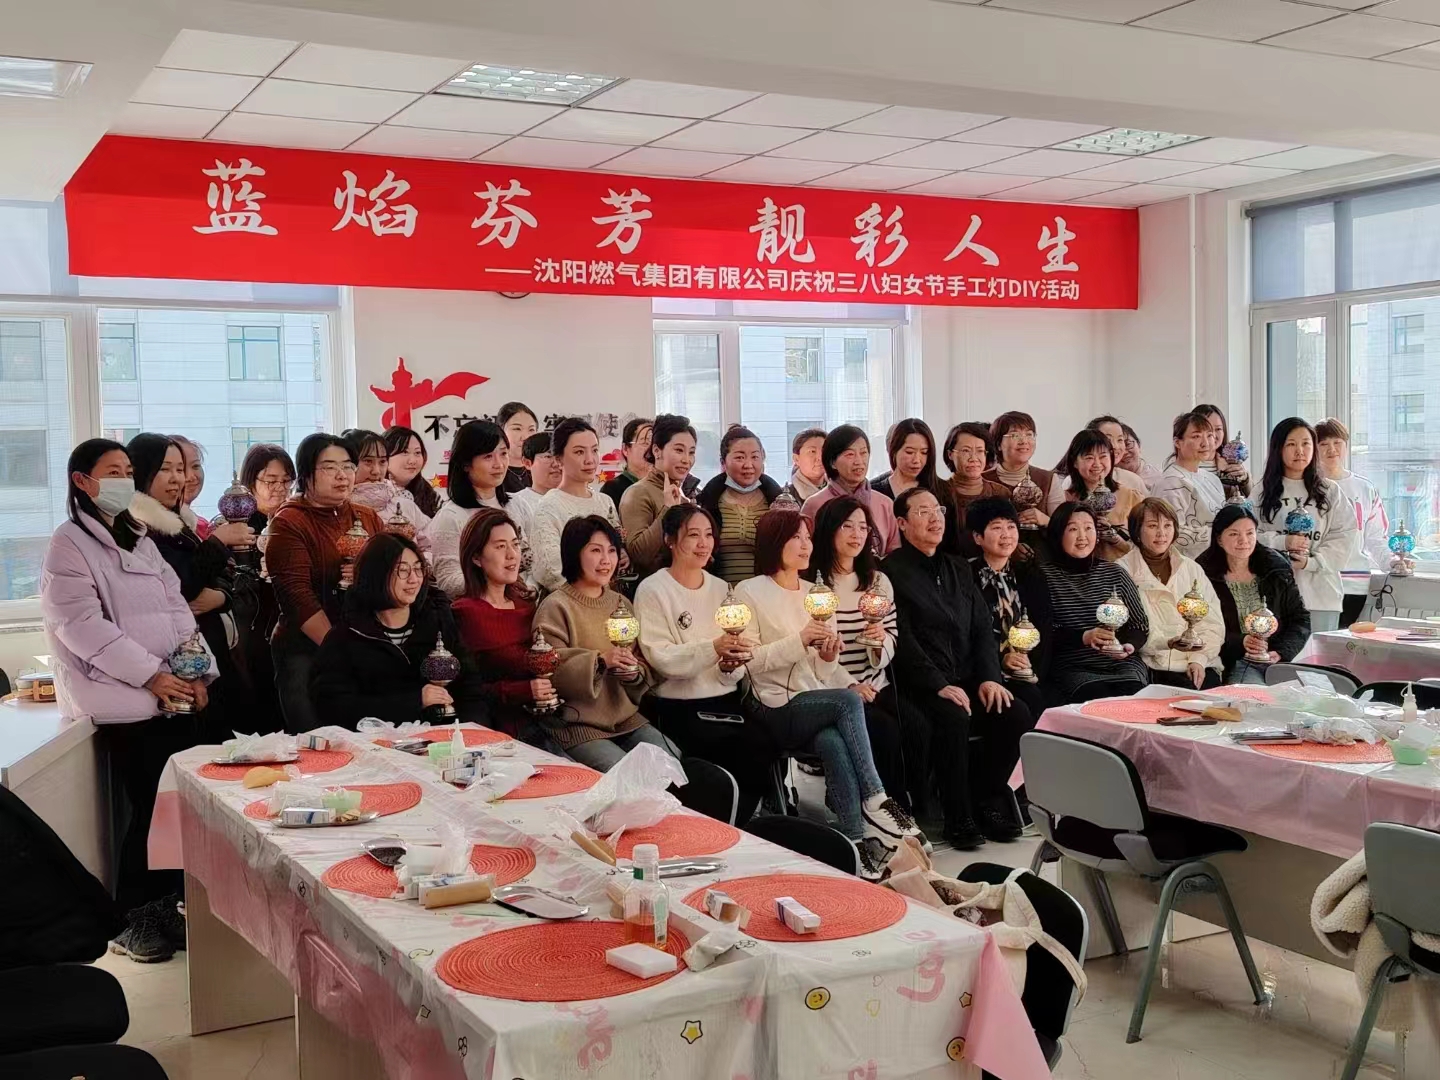 沈阳燃气集团有限公司庆祝三八妇女节手工灯DIY活动圆满结束